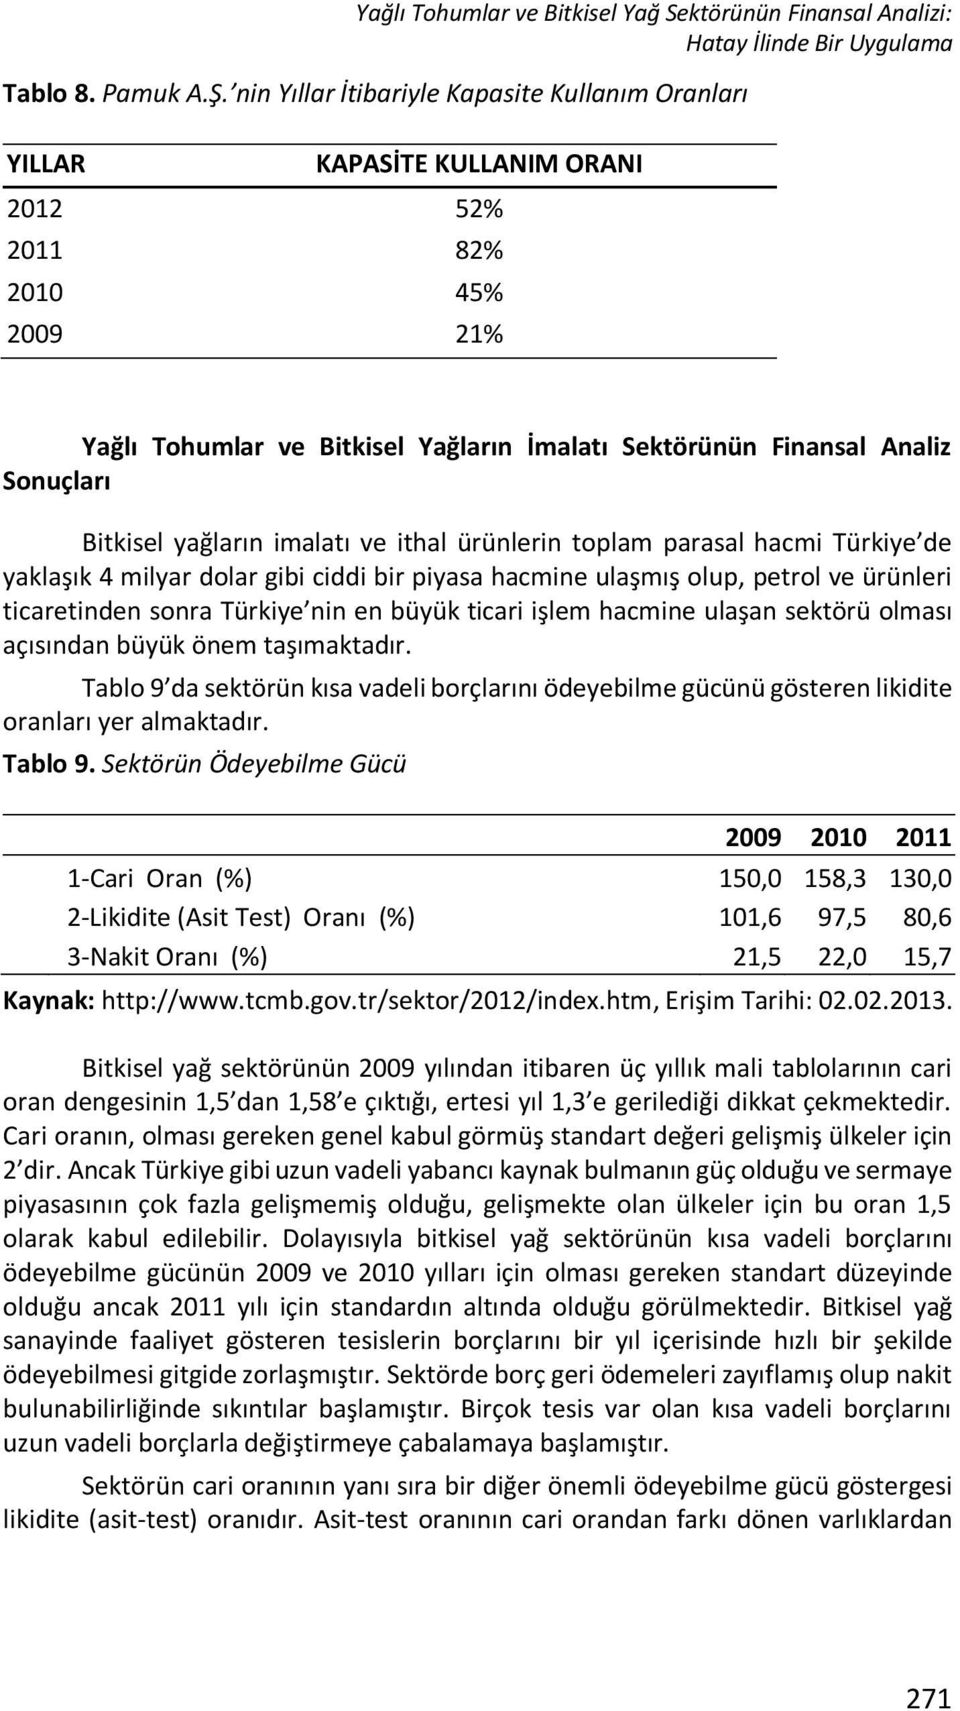 Bitkisel yağların imalatı ve ithal ürünlerin toplam parasal hacmi Türkiye de yaklaşık 4 milyar dolar gibi ciddi bir piyasa hacmine ulaşmış olup, petrol ve ürünleri ticaretinden sonra Türkiye nin en